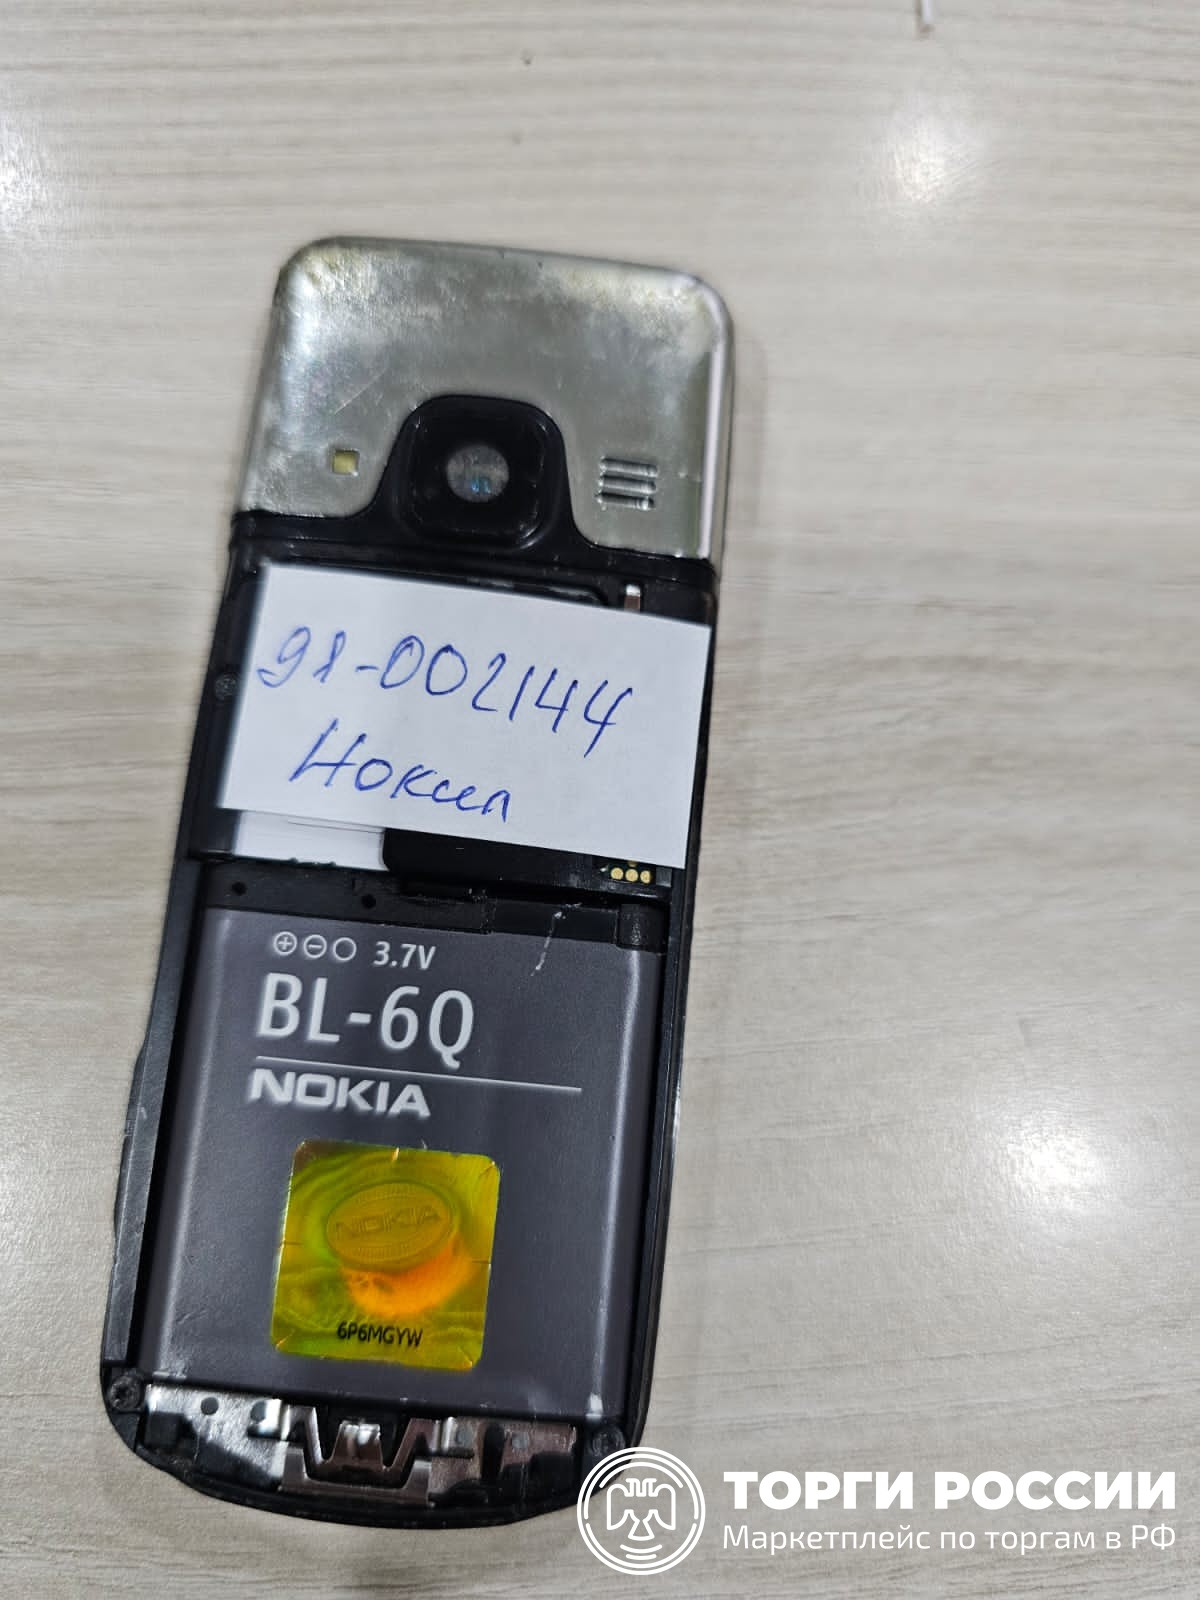 Код россии для мобильного телеграмм телефона с мобильного бесплатно фото 28